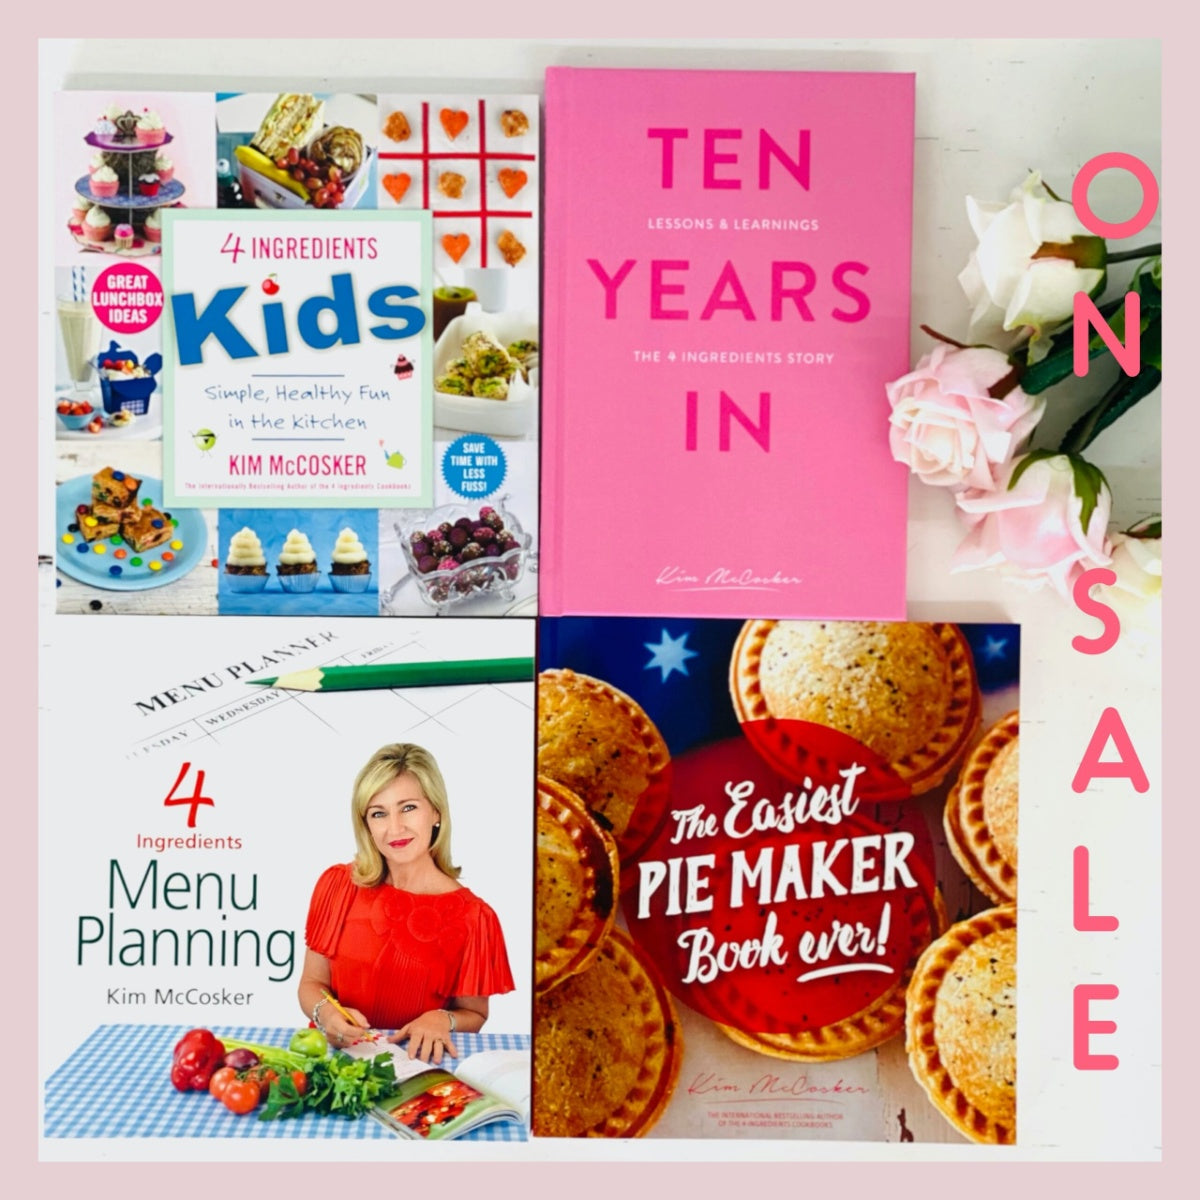 4 Ingredients Kids + 4 Ingredients Menu Planning + The Easiest Pie Maker Book ever + A FREE copy of Ten Years In